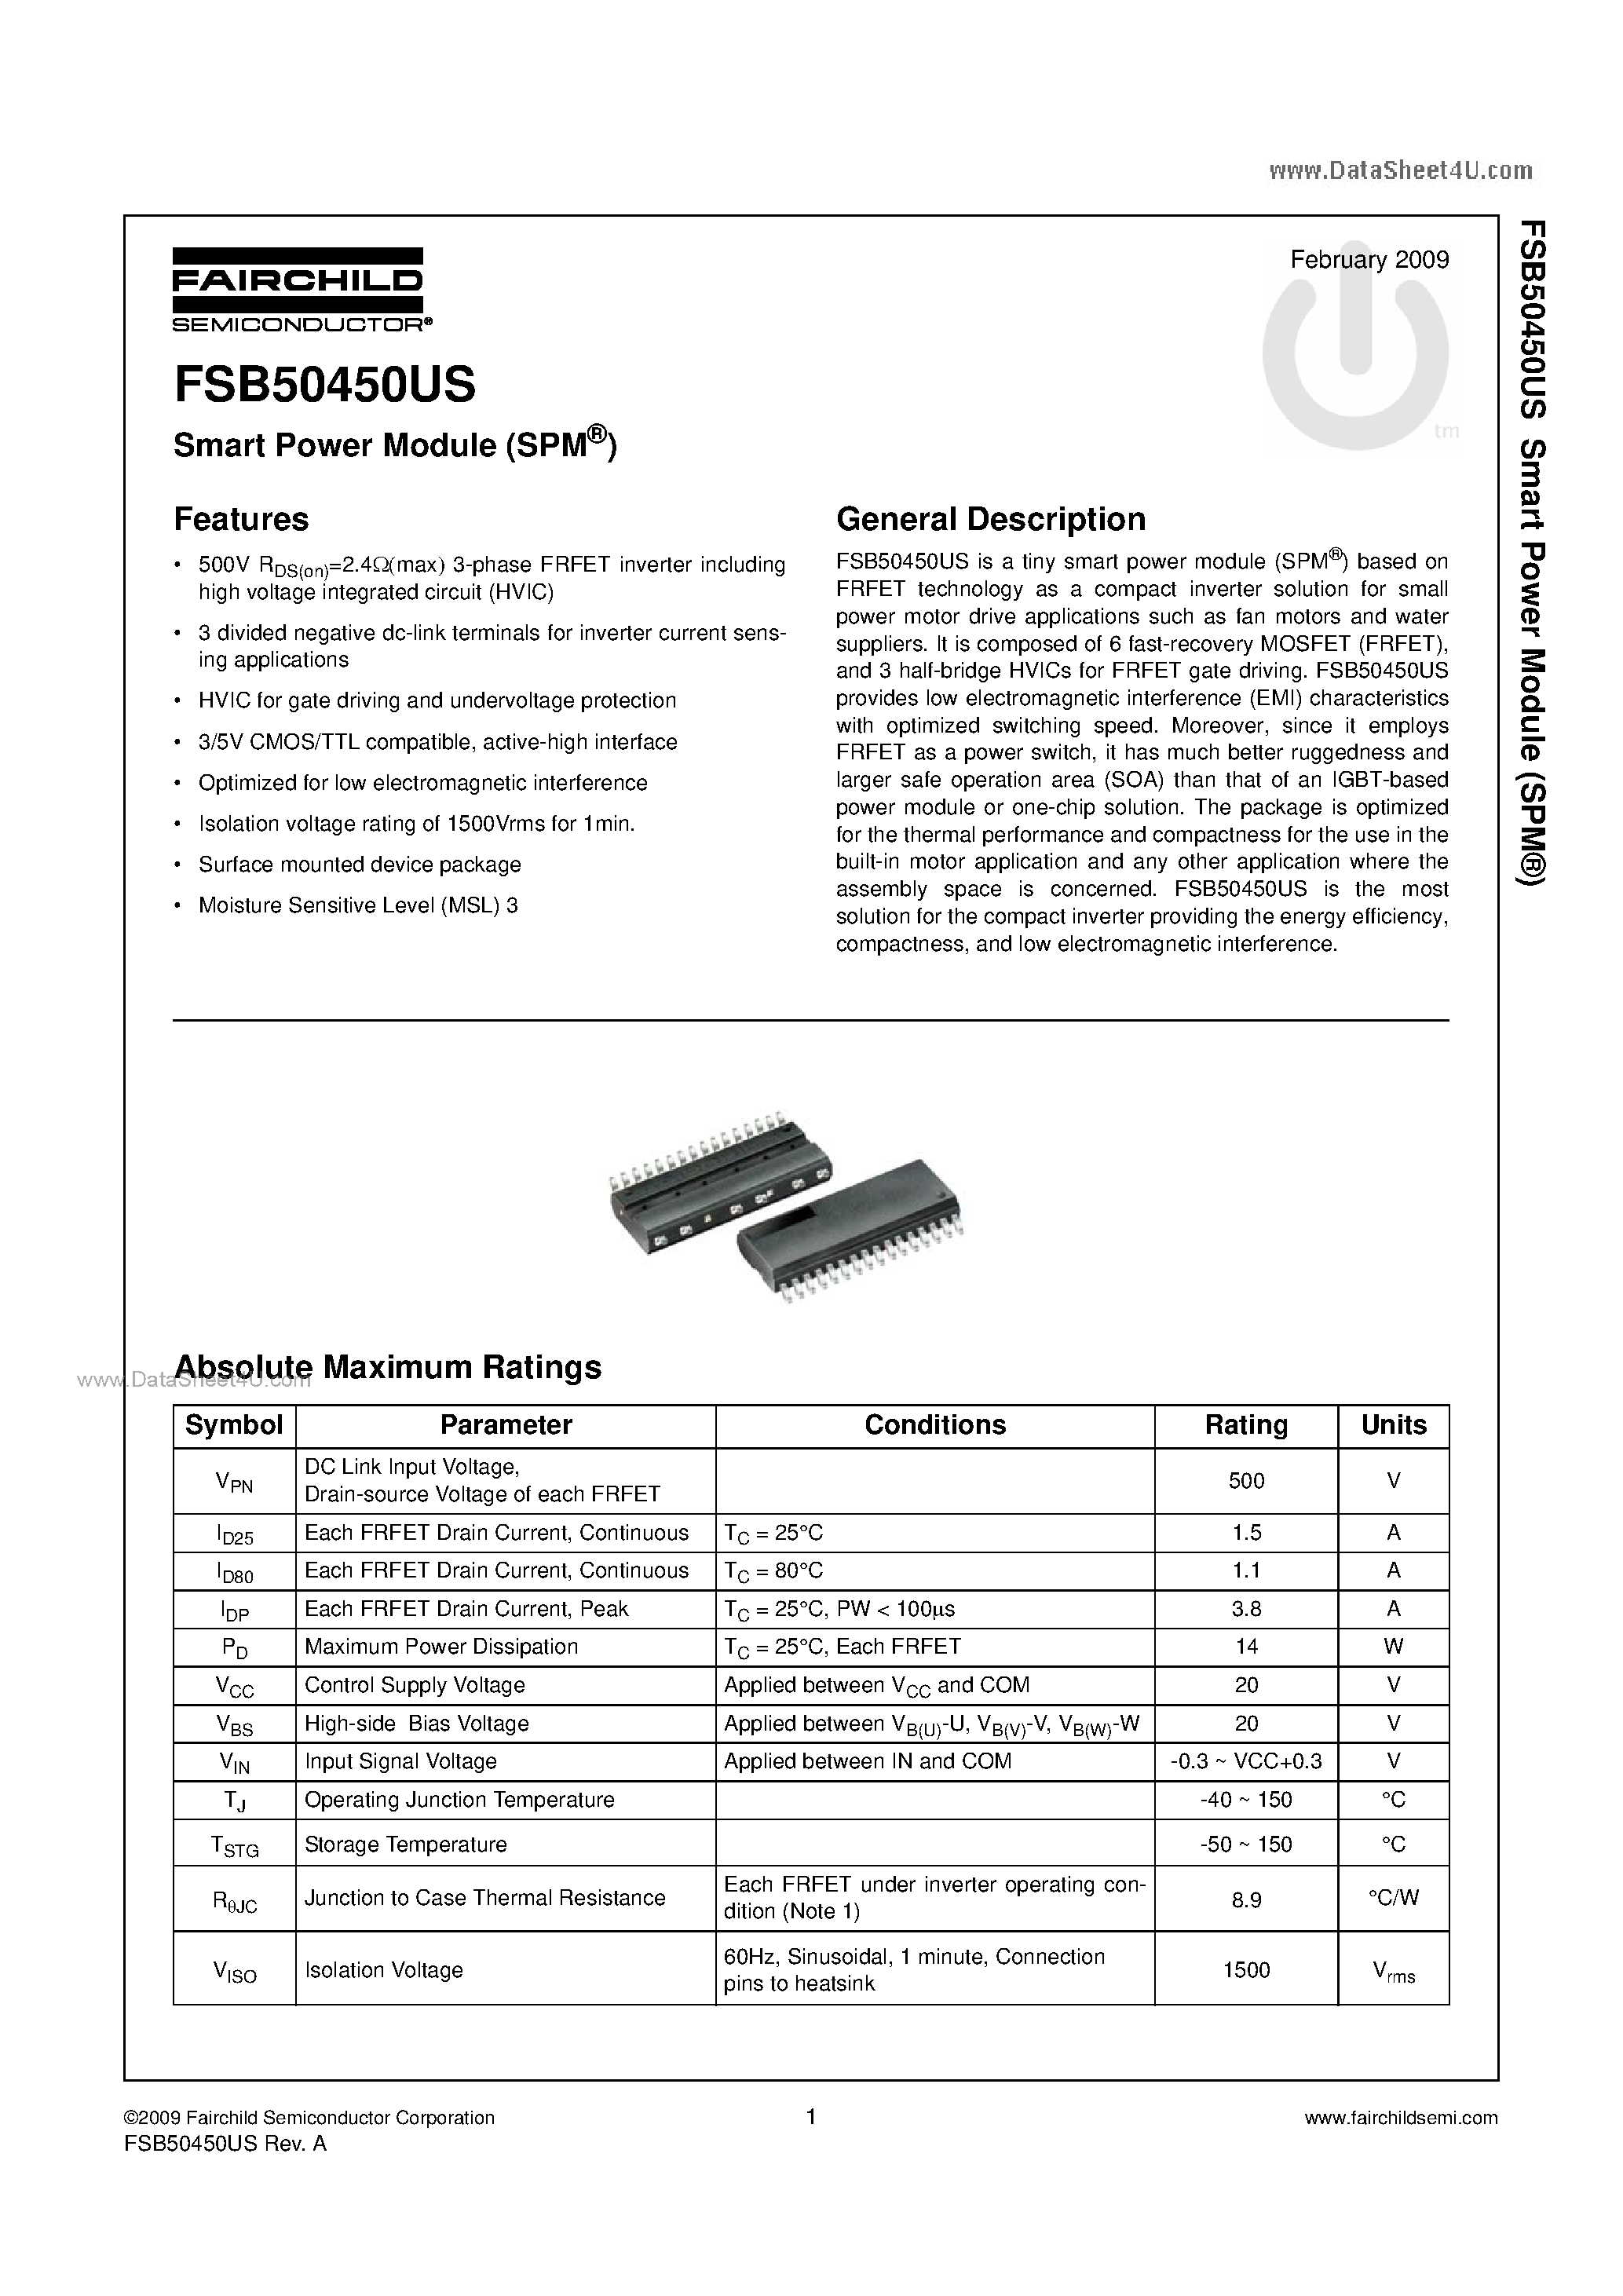 Даташит FSB50450US - Smart Power Module страница 1